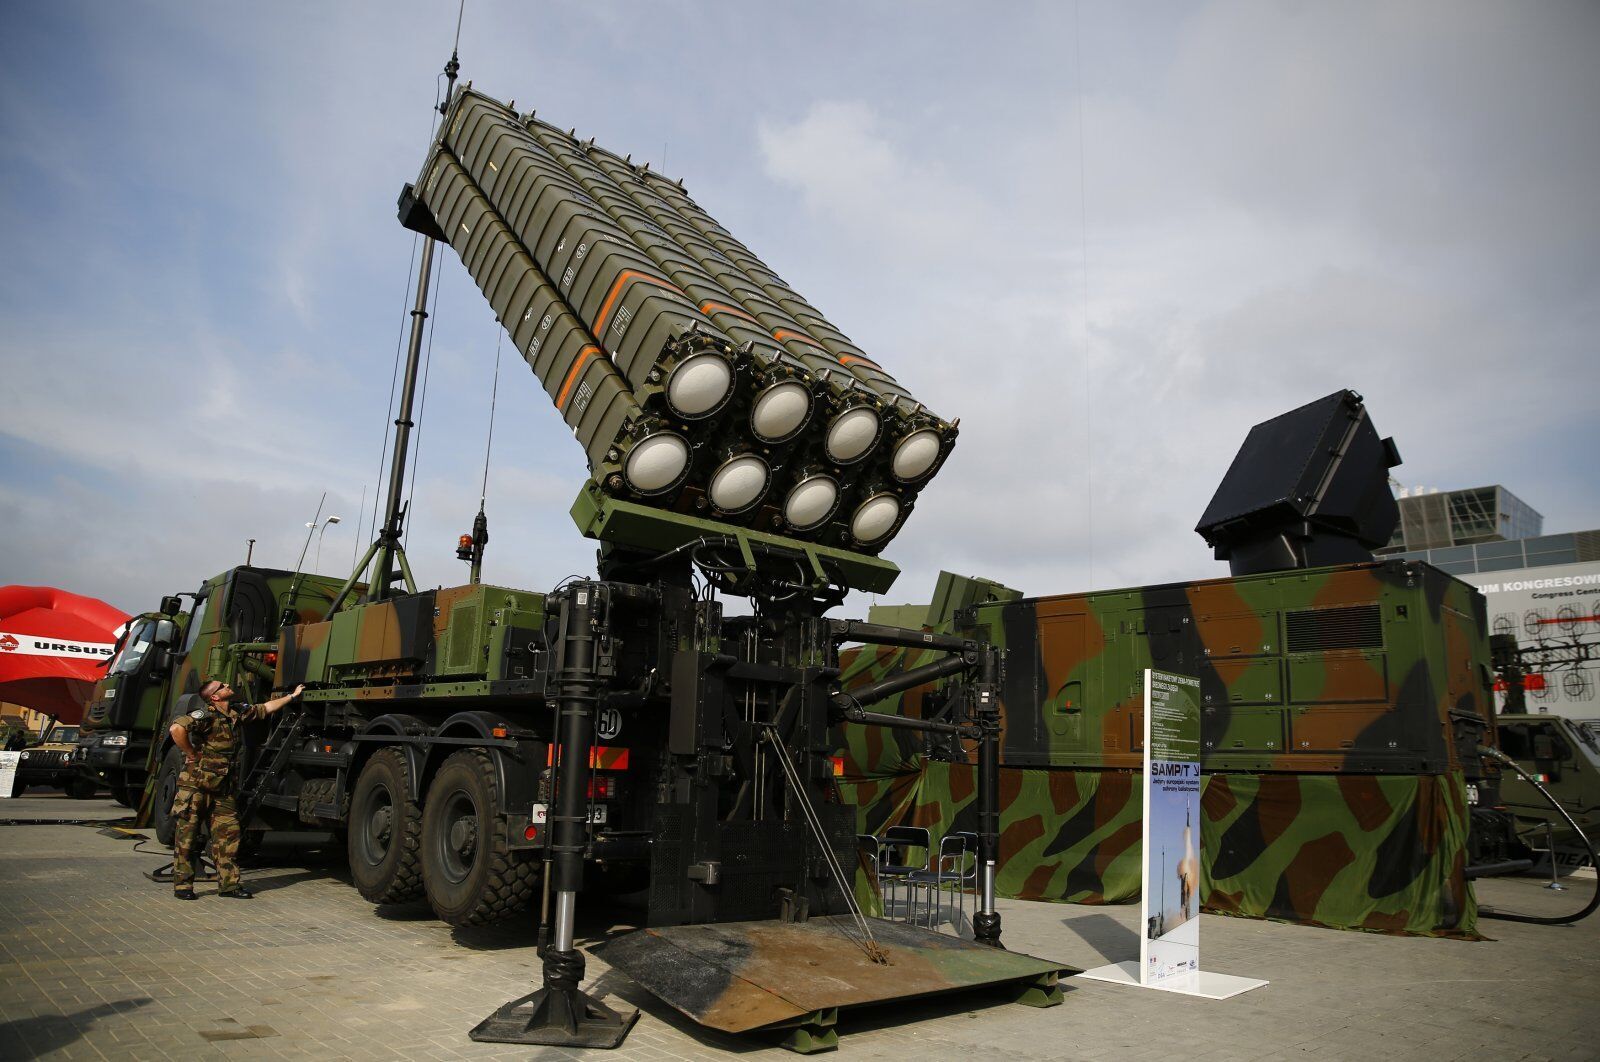 Франция и Италия пришли к согласию в дискуссии о передаче Украине системы ПВО SAMP/T